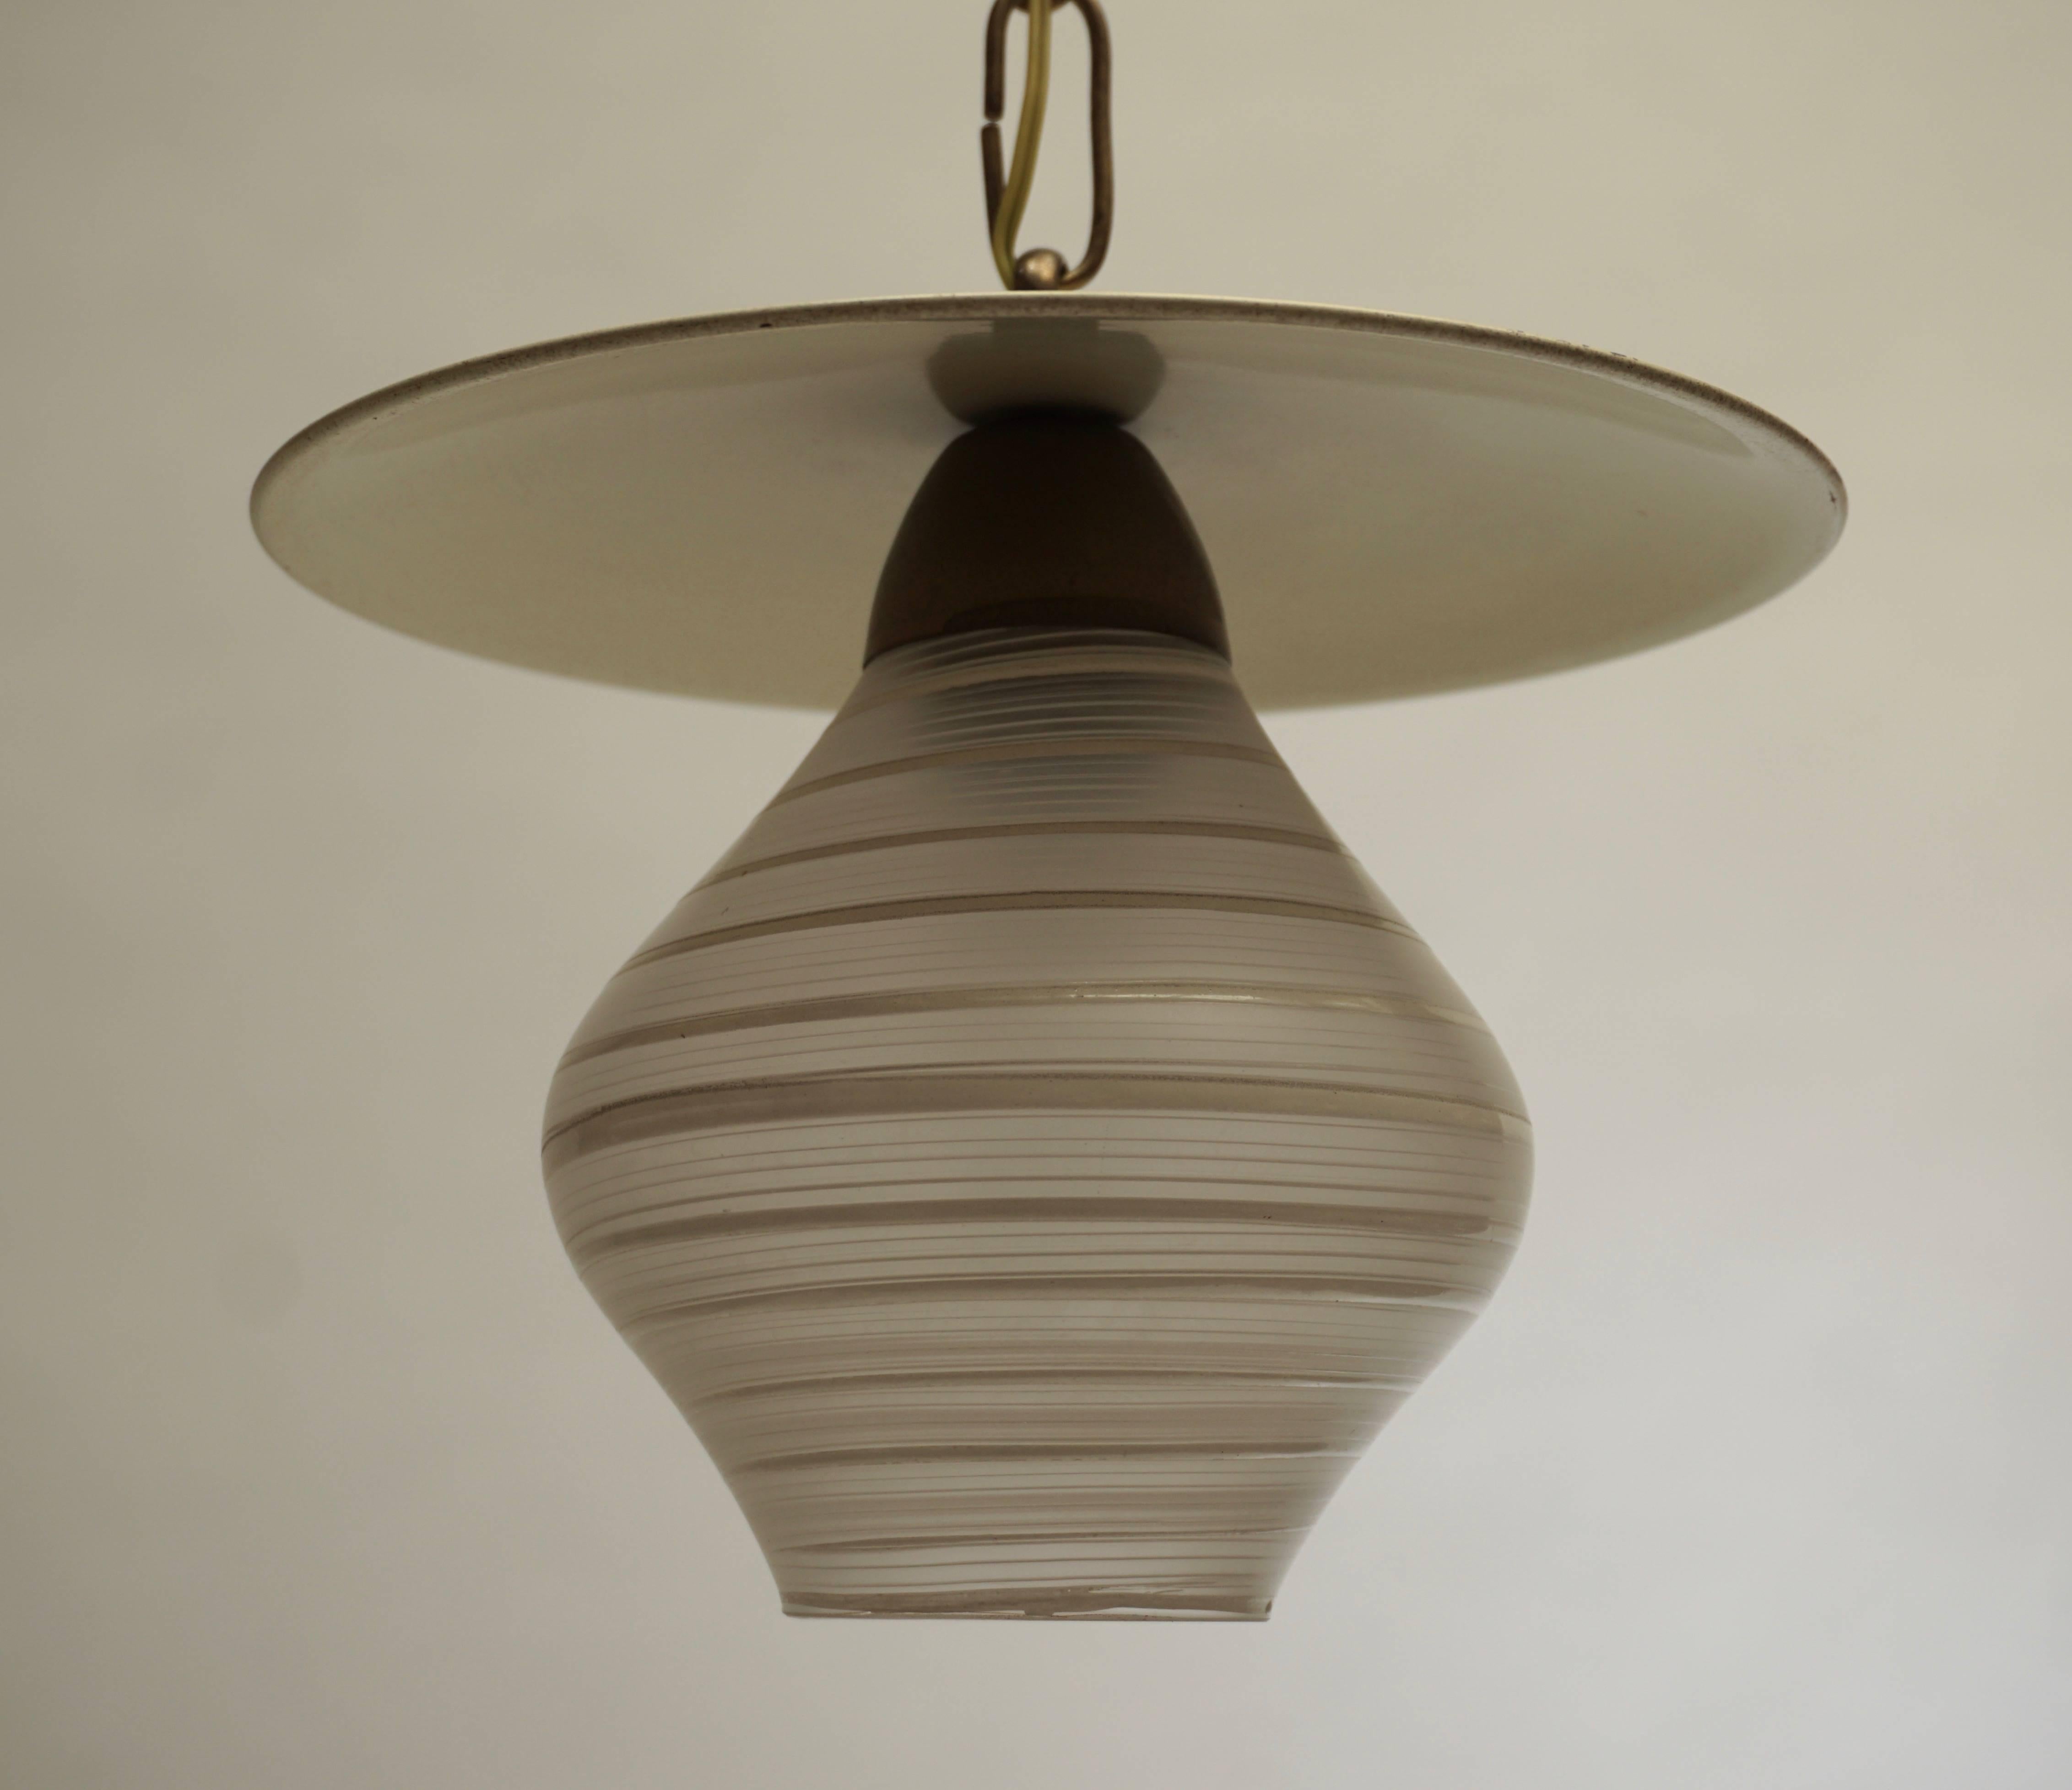 Lampe pendante en verre de Murano (ampoule E14)
Mesure : Diamètre 22 cm.
Fixation en hauteur 17 cm.
Hauteur totale 50 cm.